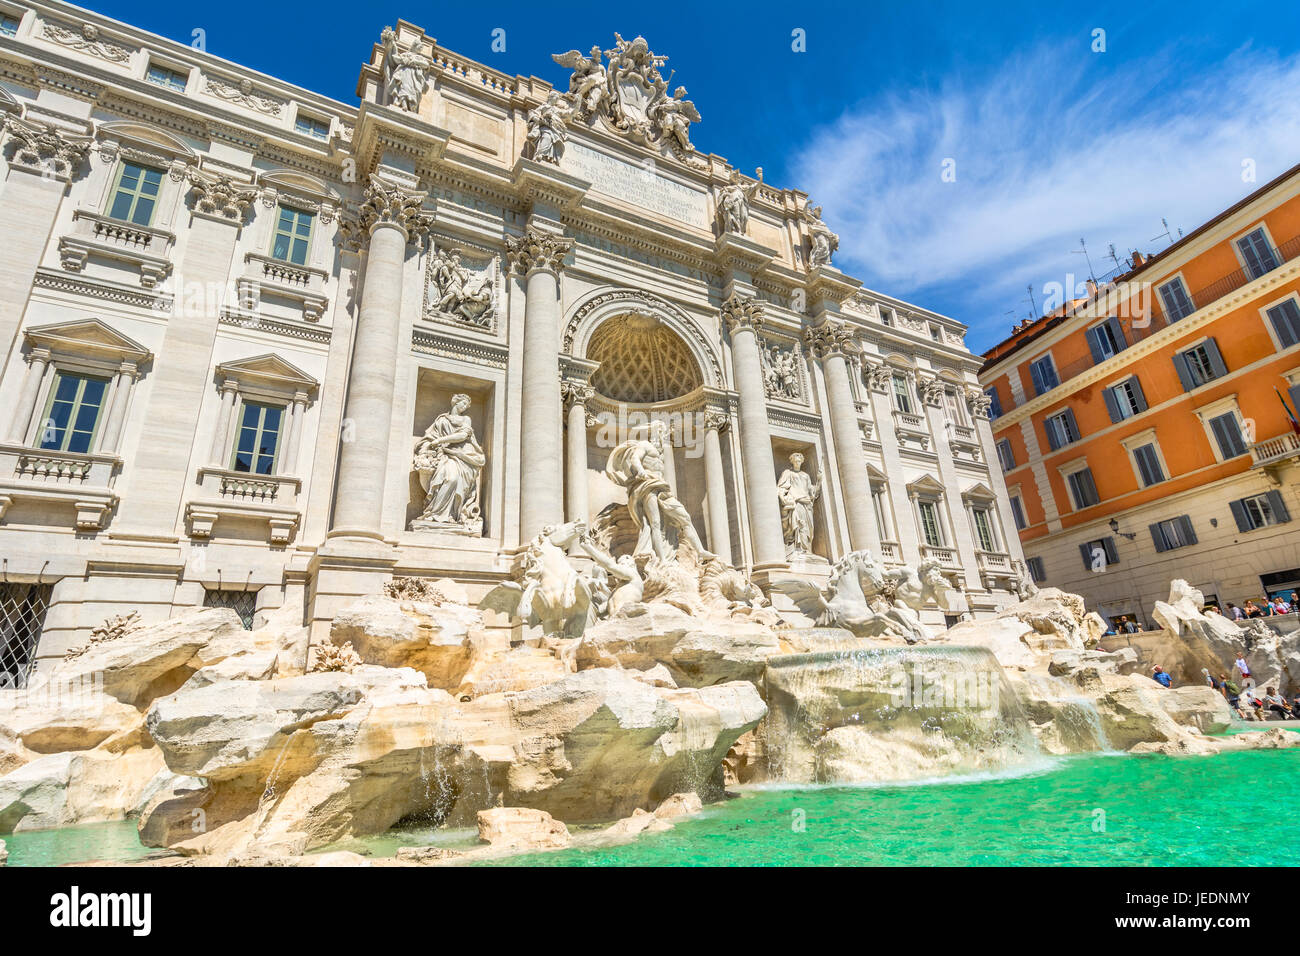 Der Trevi Brunnen, die Fontana di Trevi, ist ein Brunnen in der Trevi rione in Rom, Italien. Ständige 25,9 Meter hoch und 20 Meter breit, es ist der Große Stockfoto